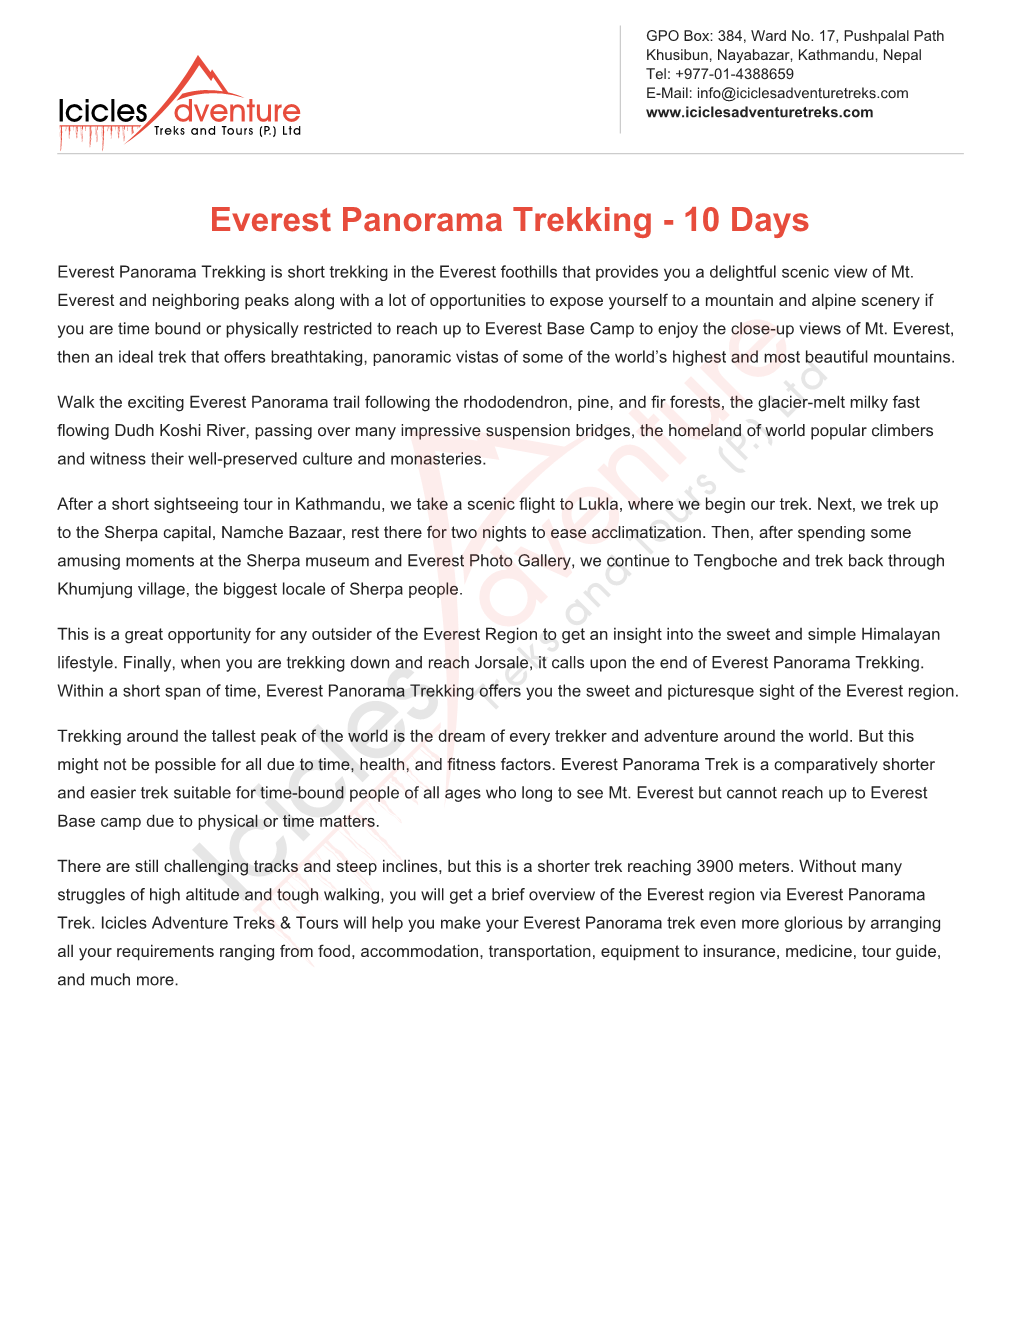 Everest Panorama Trekking - 10 Days